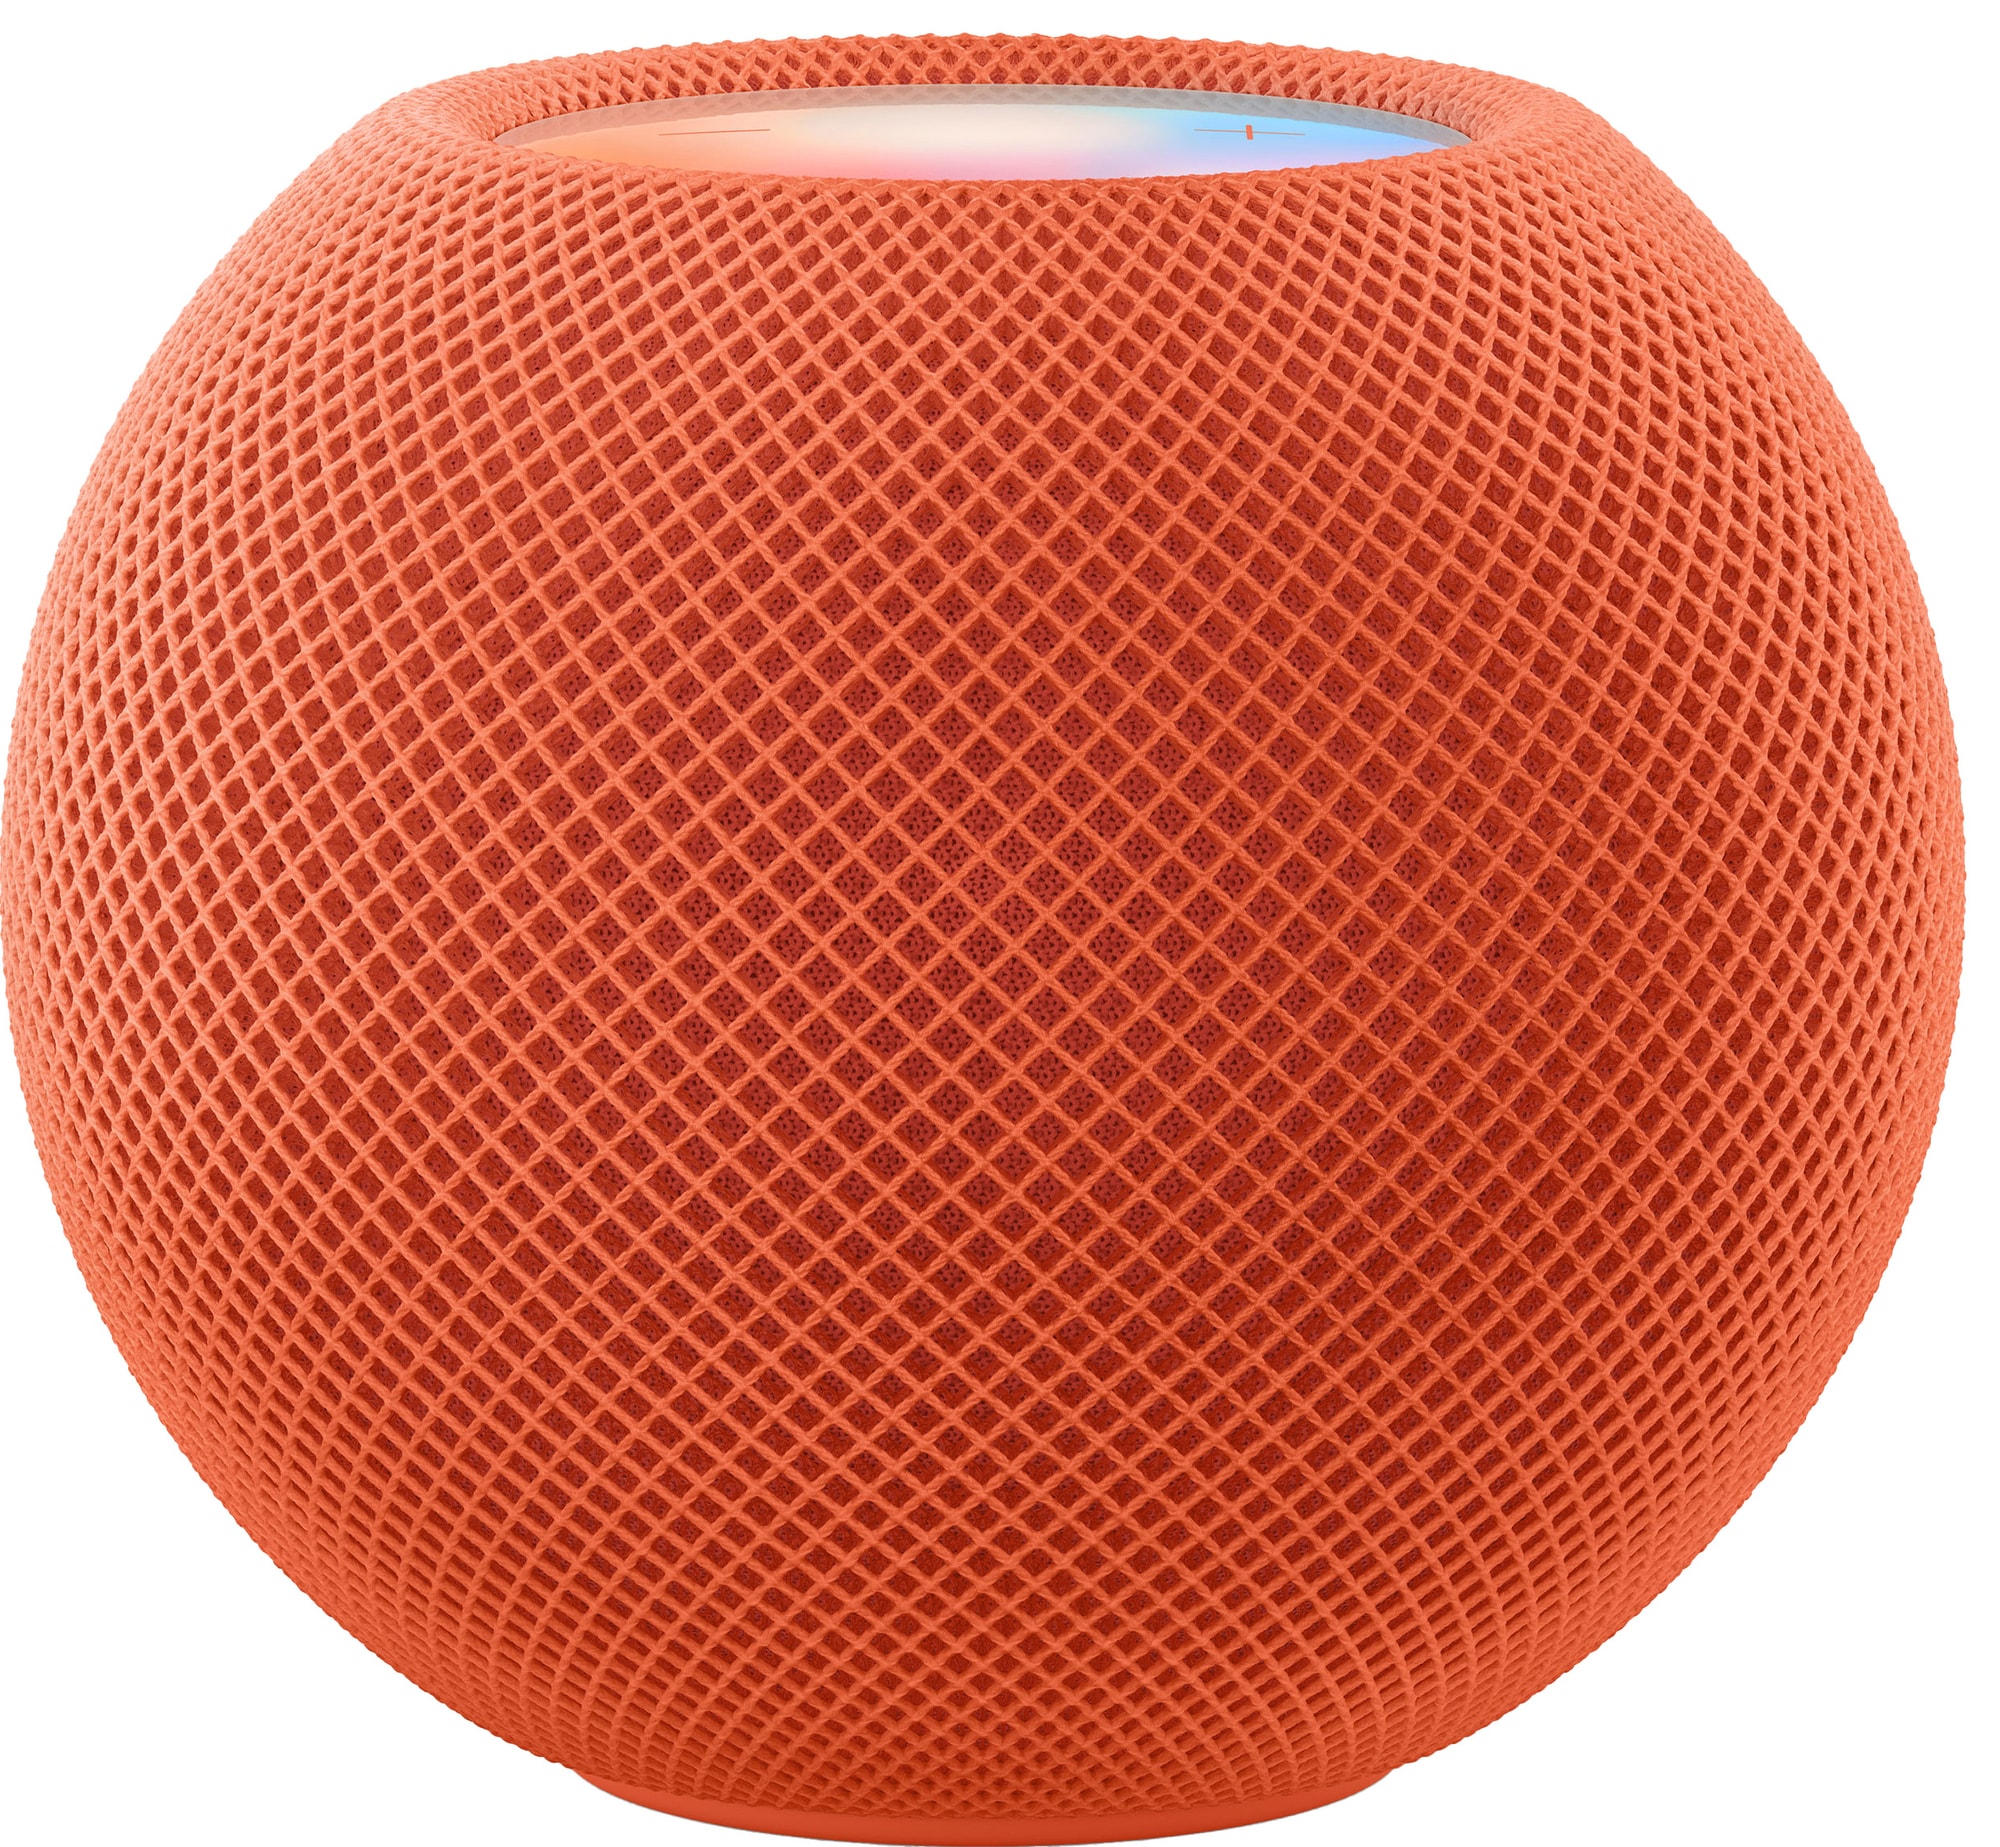 Apple HomePod mini høyttaler (oransje) - Elkjøp